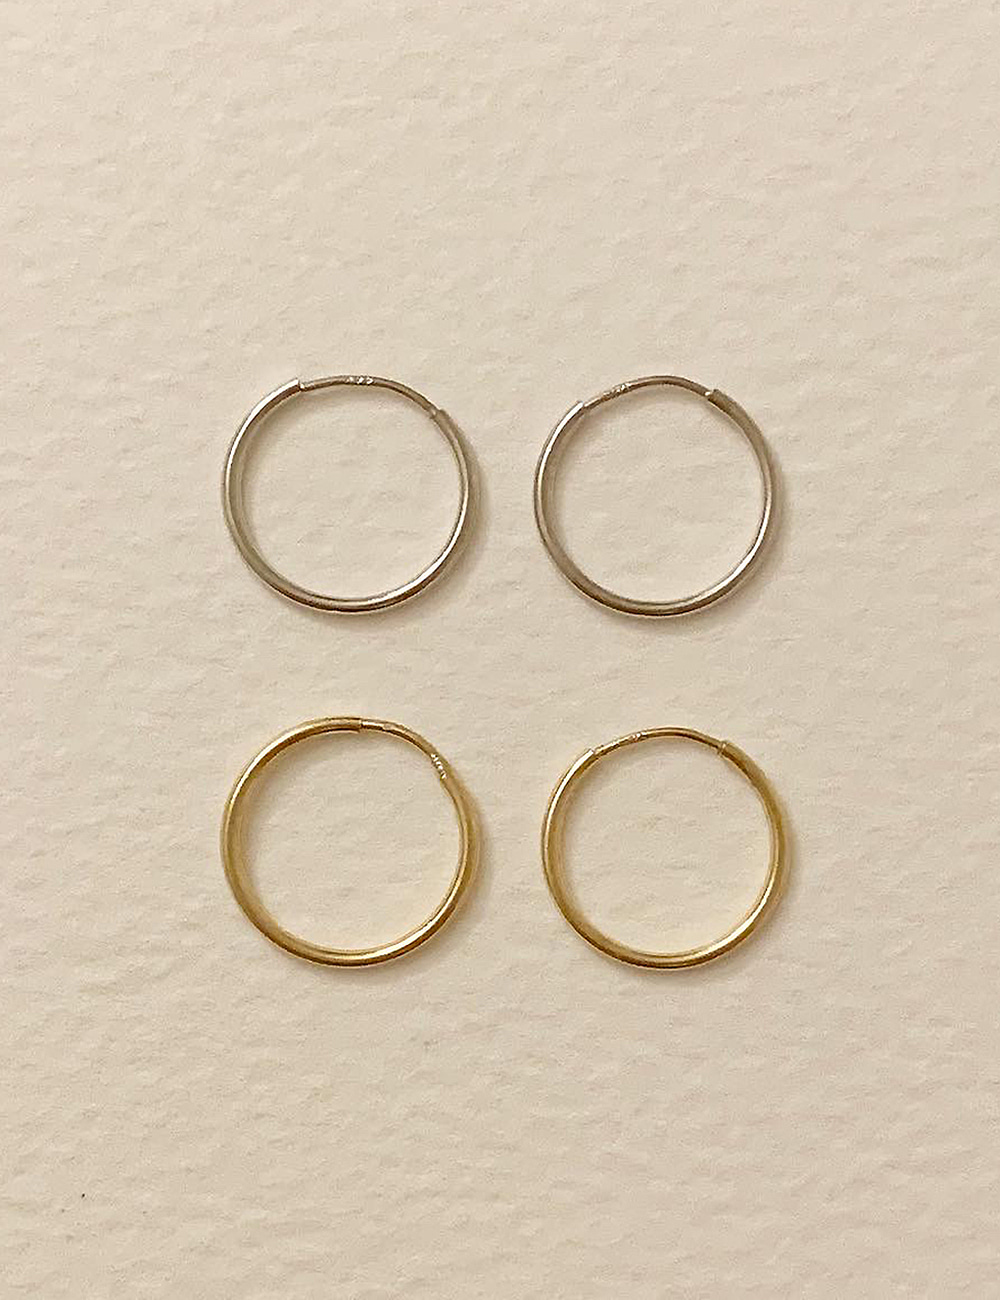 (14k gold) 12mm ring earring